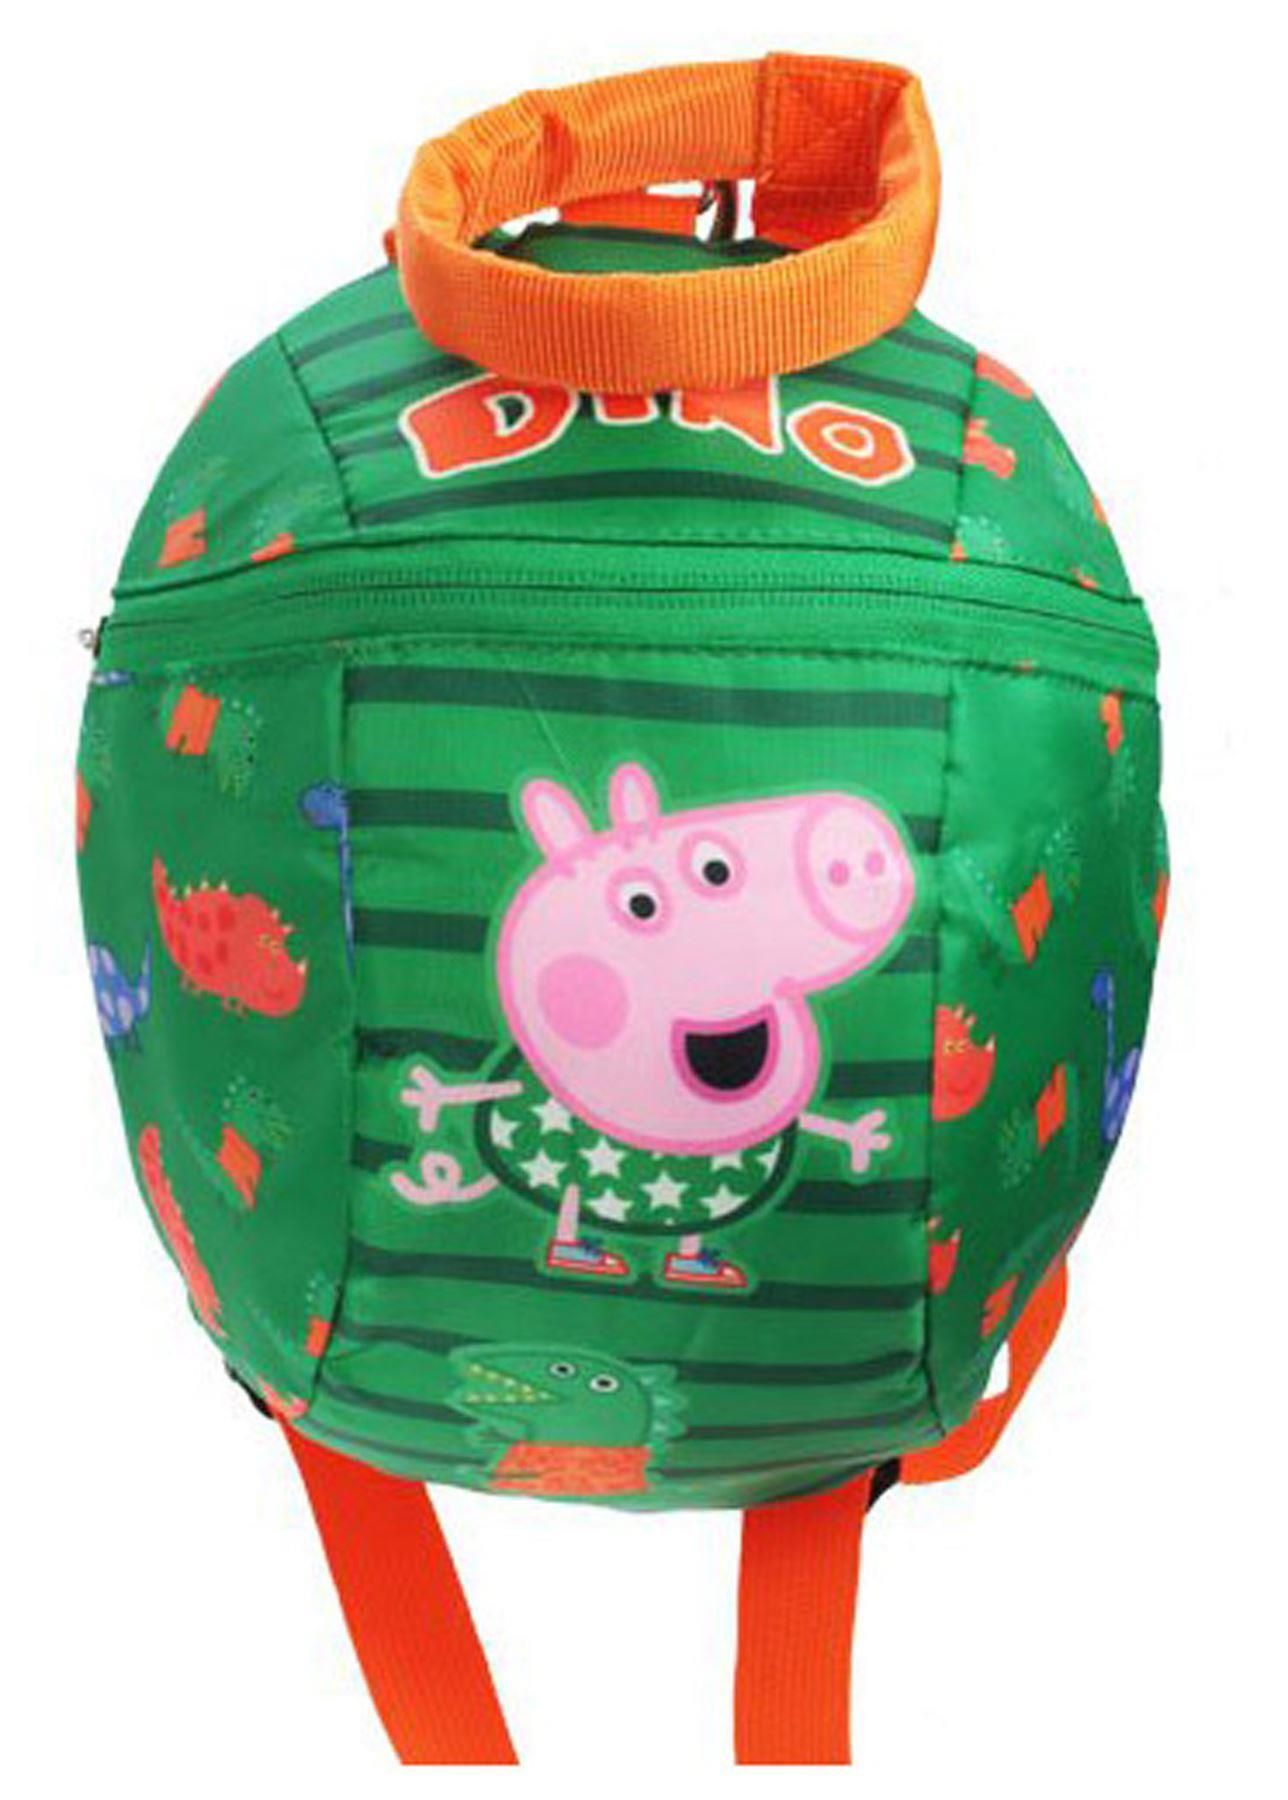 Peppa Pig George Dino Rude Reins School Bag Rucksack Backpack